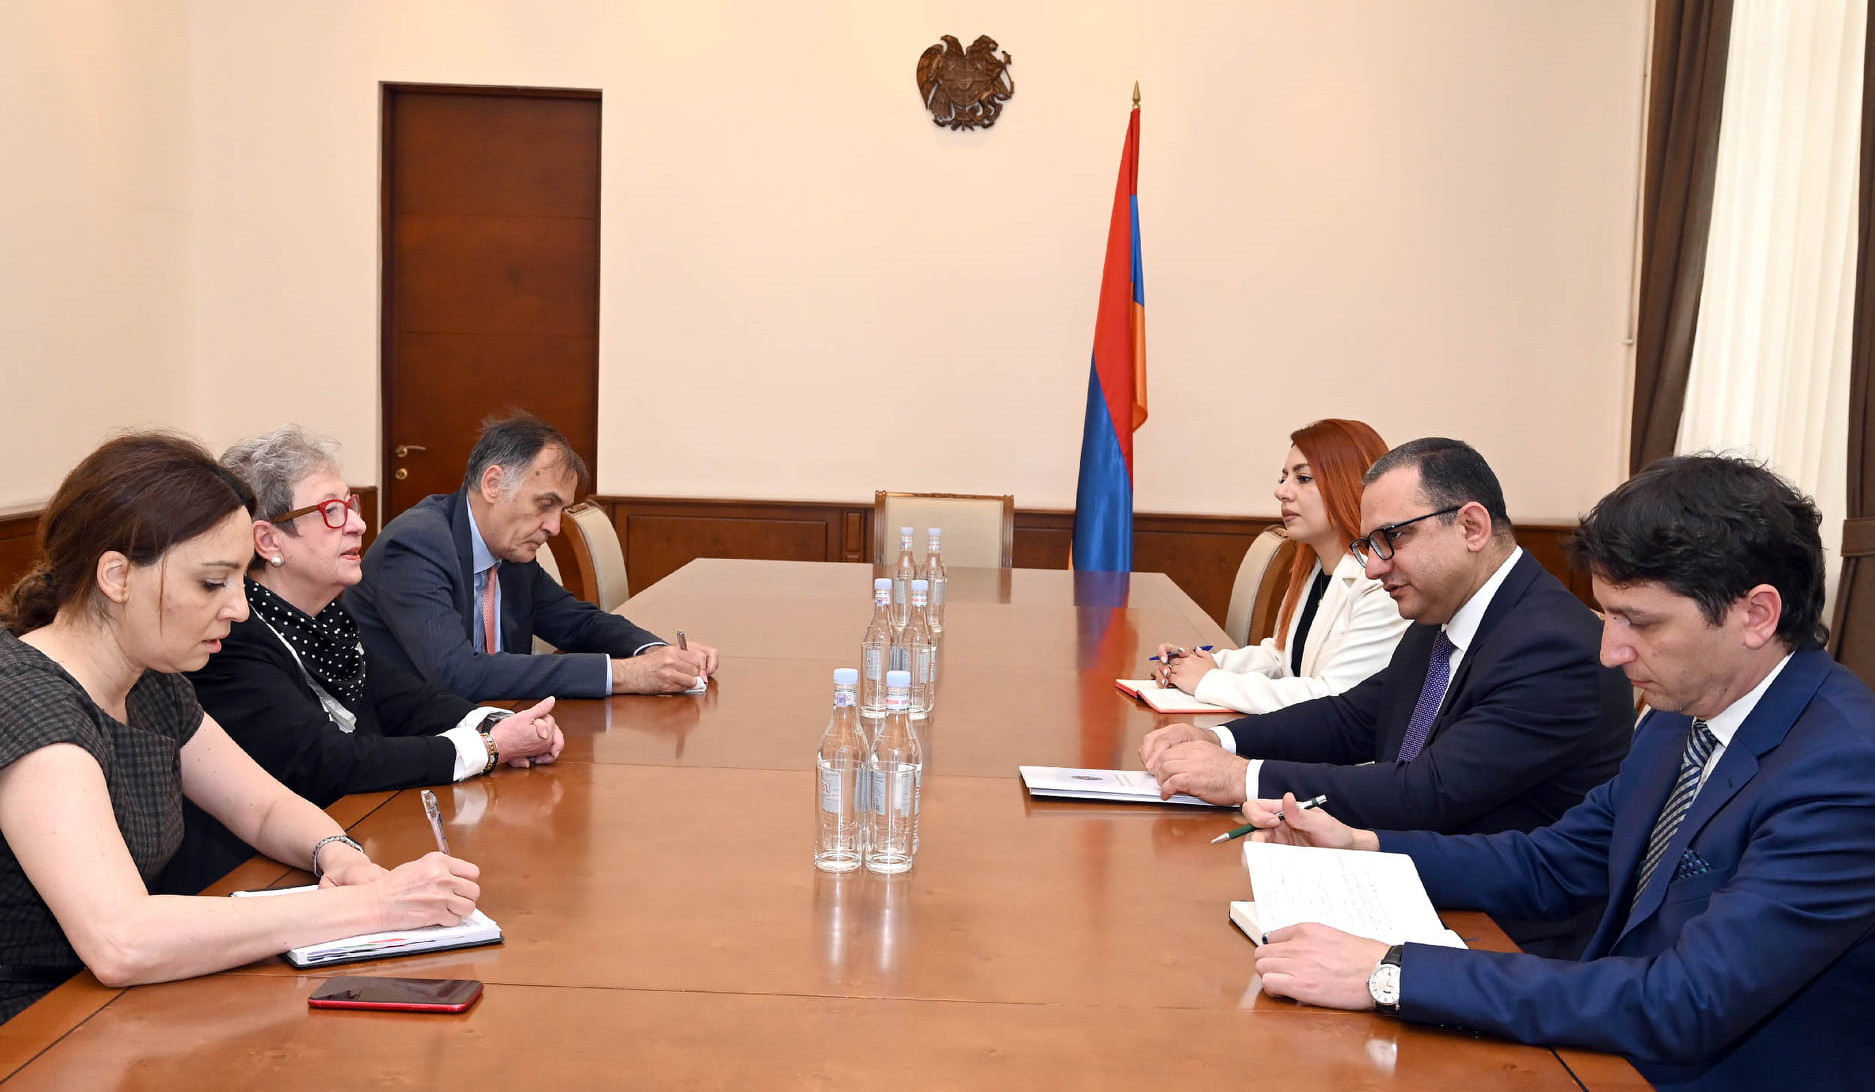 ЕС готов продолжать оказывать содействие правительству Армении - Андреа Викторин